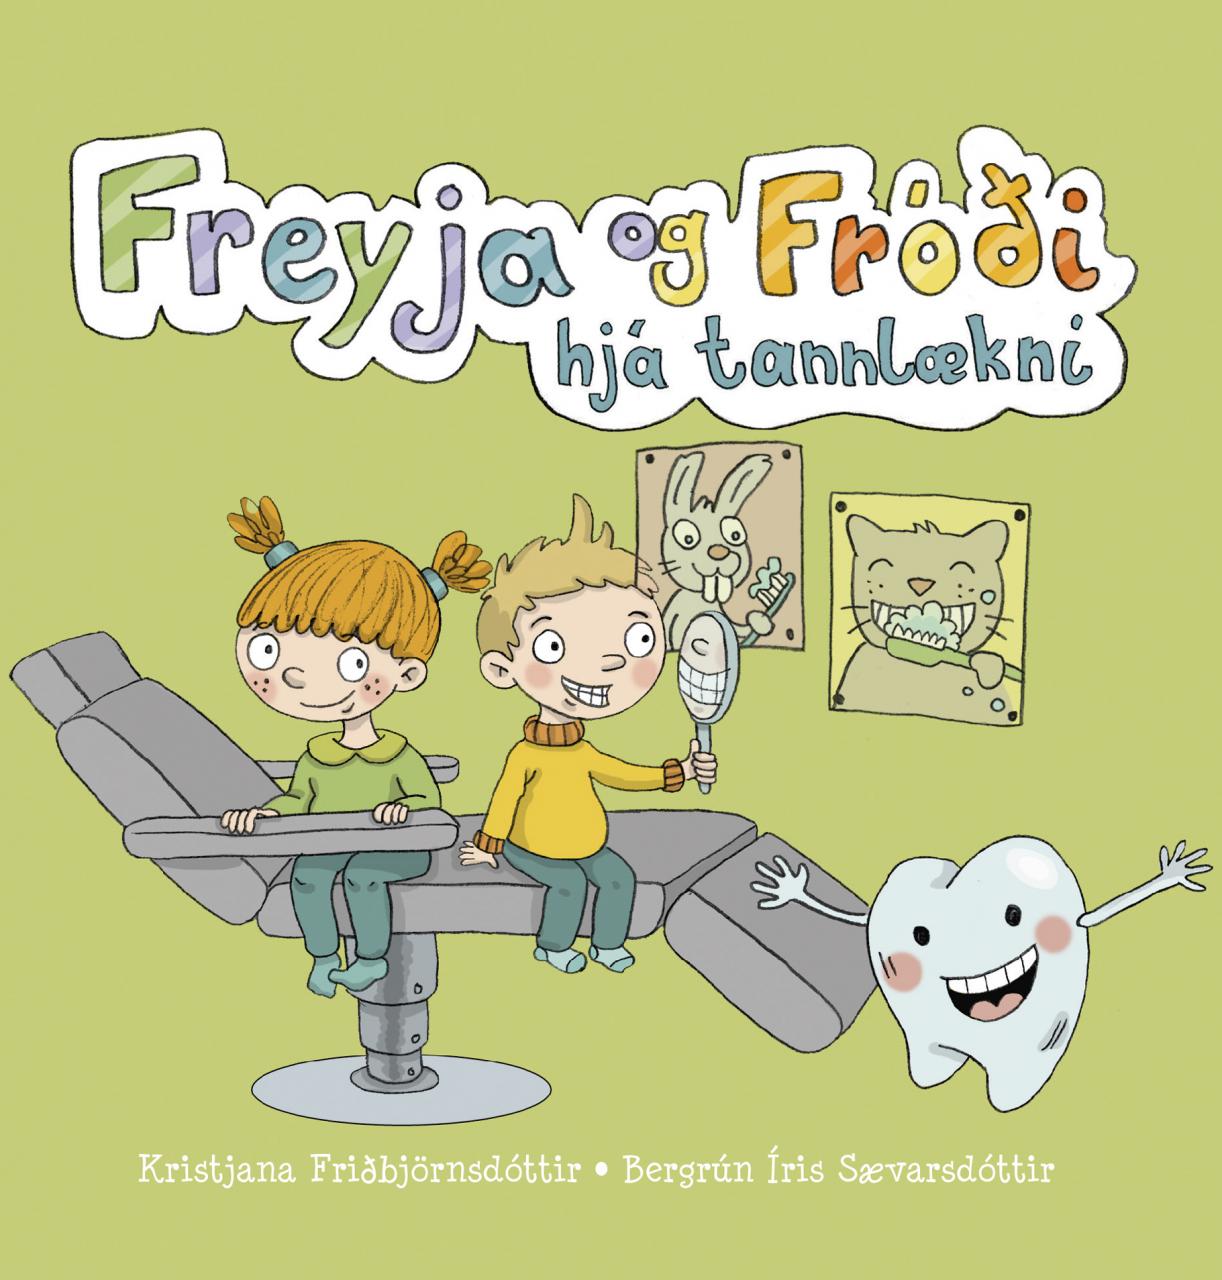 Freyja og Fróði hjá tannlækni (Freyja and Fróði at the Dentist's)